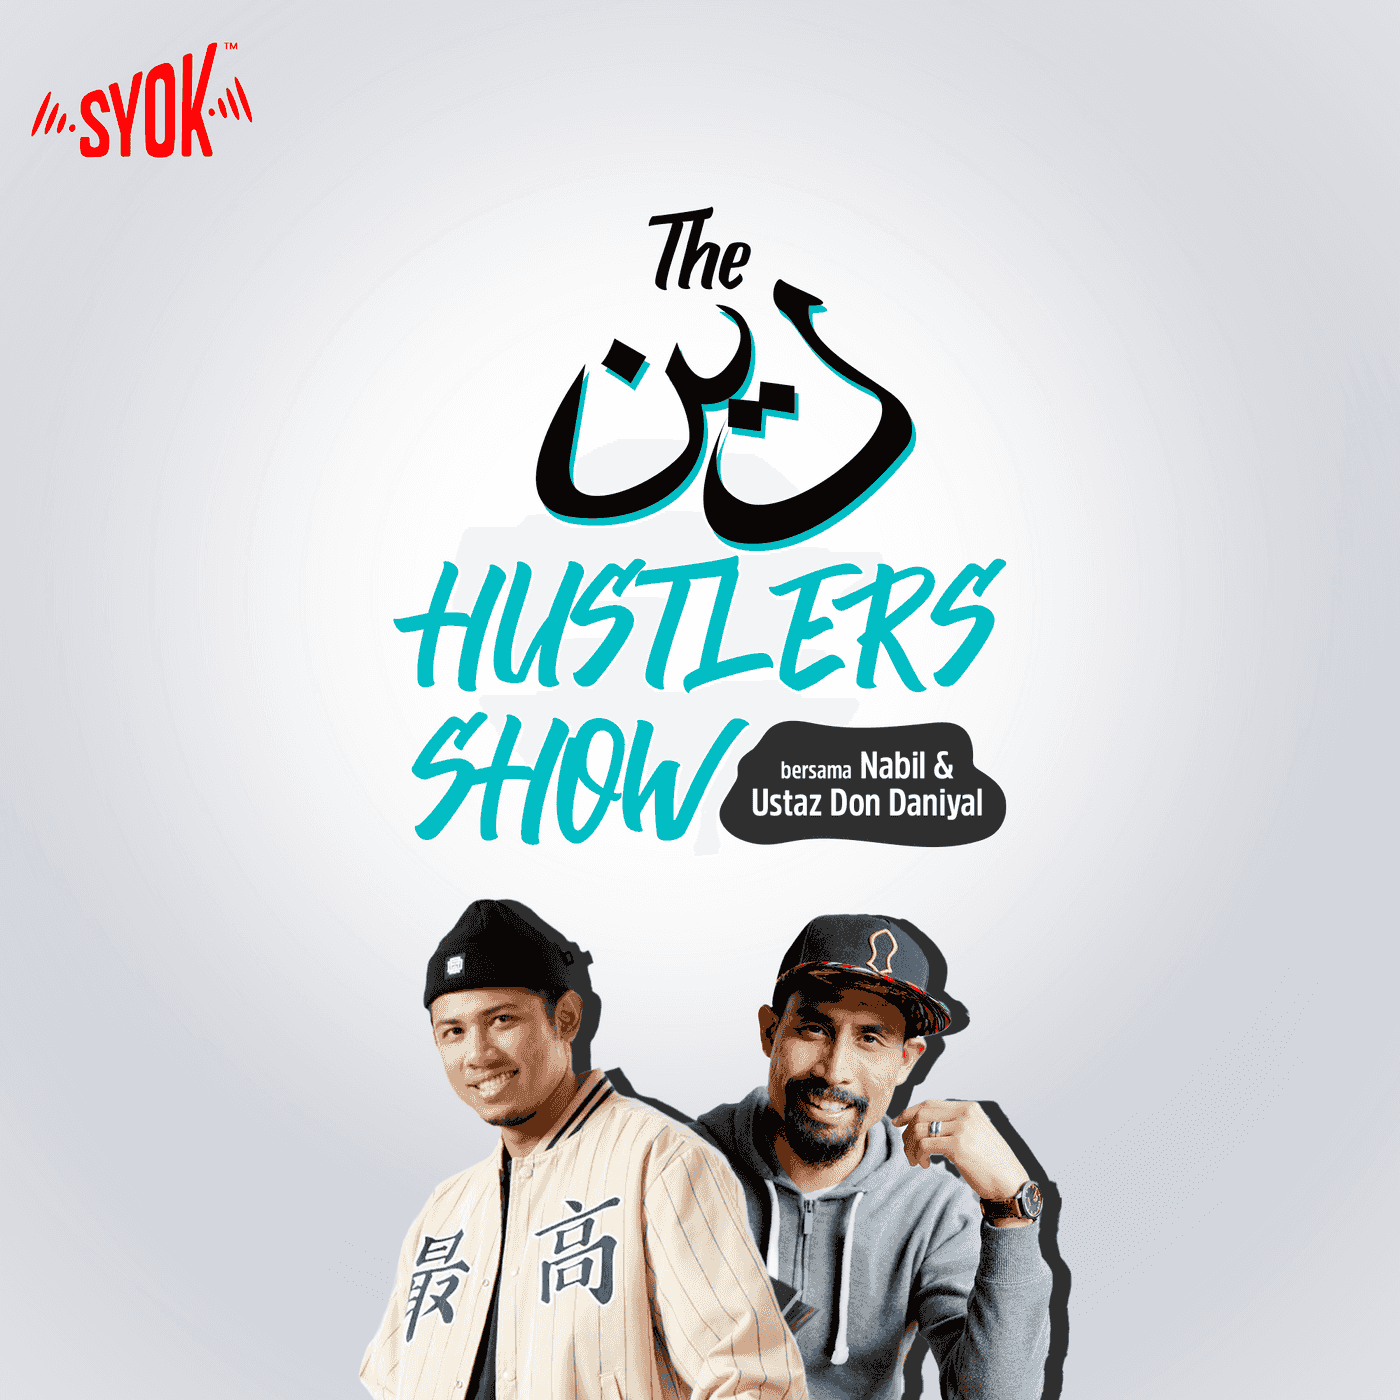 The Deen Hustlers Show bersama Nabil & Ustaz Don Daniyal